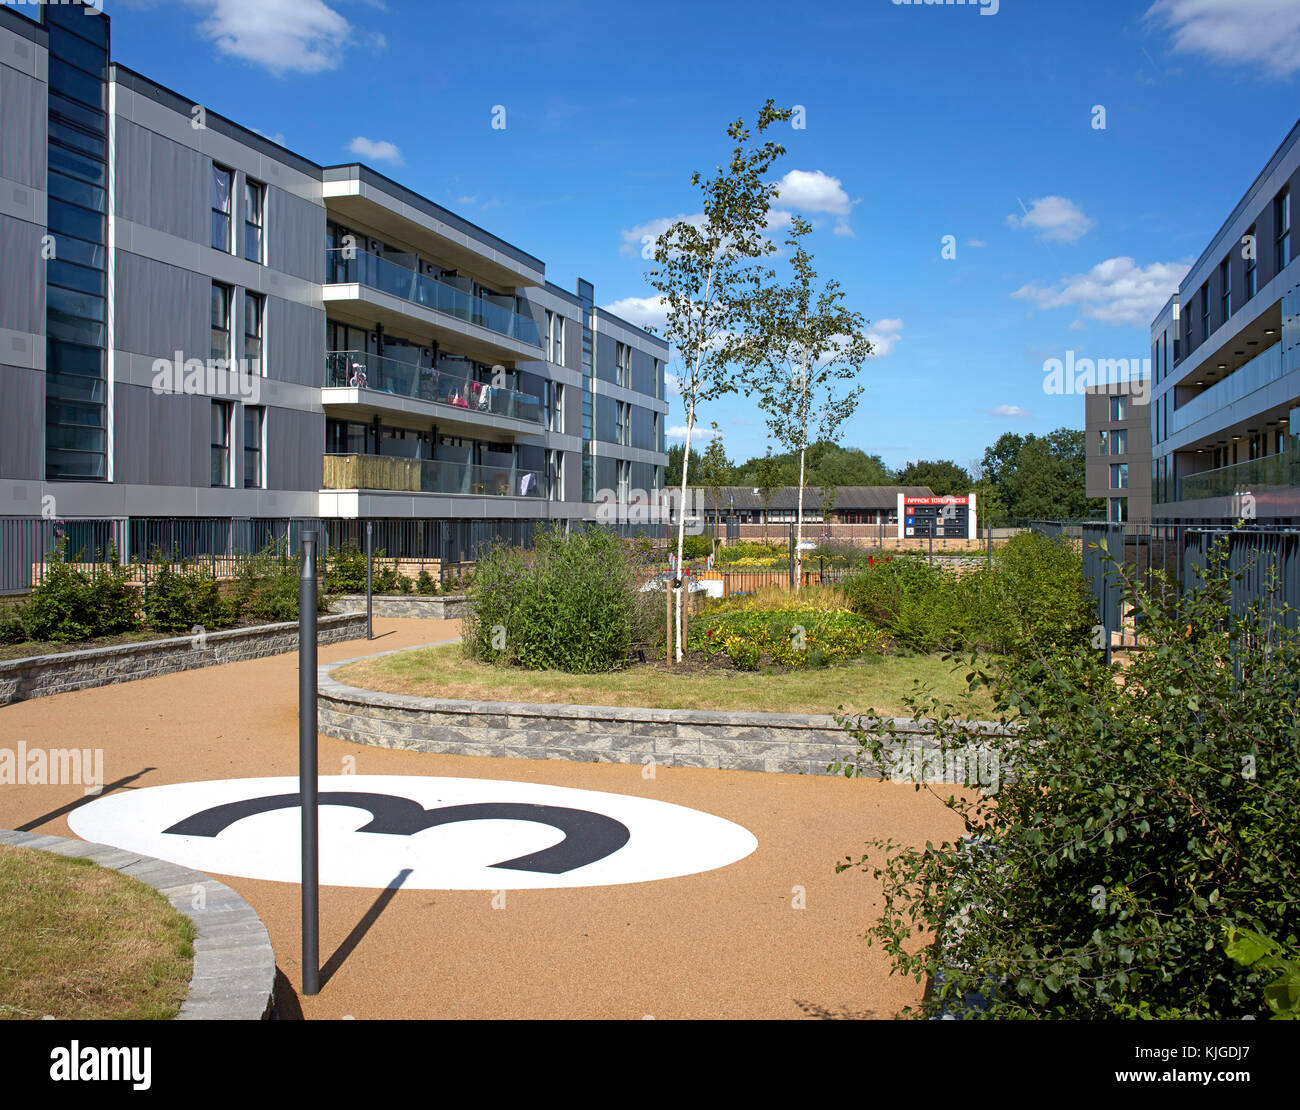 Zentrale angehoben Garten. Walthamstow Stadium Gehäuse Entwicklung, Walthamstow, Vereinigtes Königreich. Architekt: Conran und Partner, 2017. Stockfoto